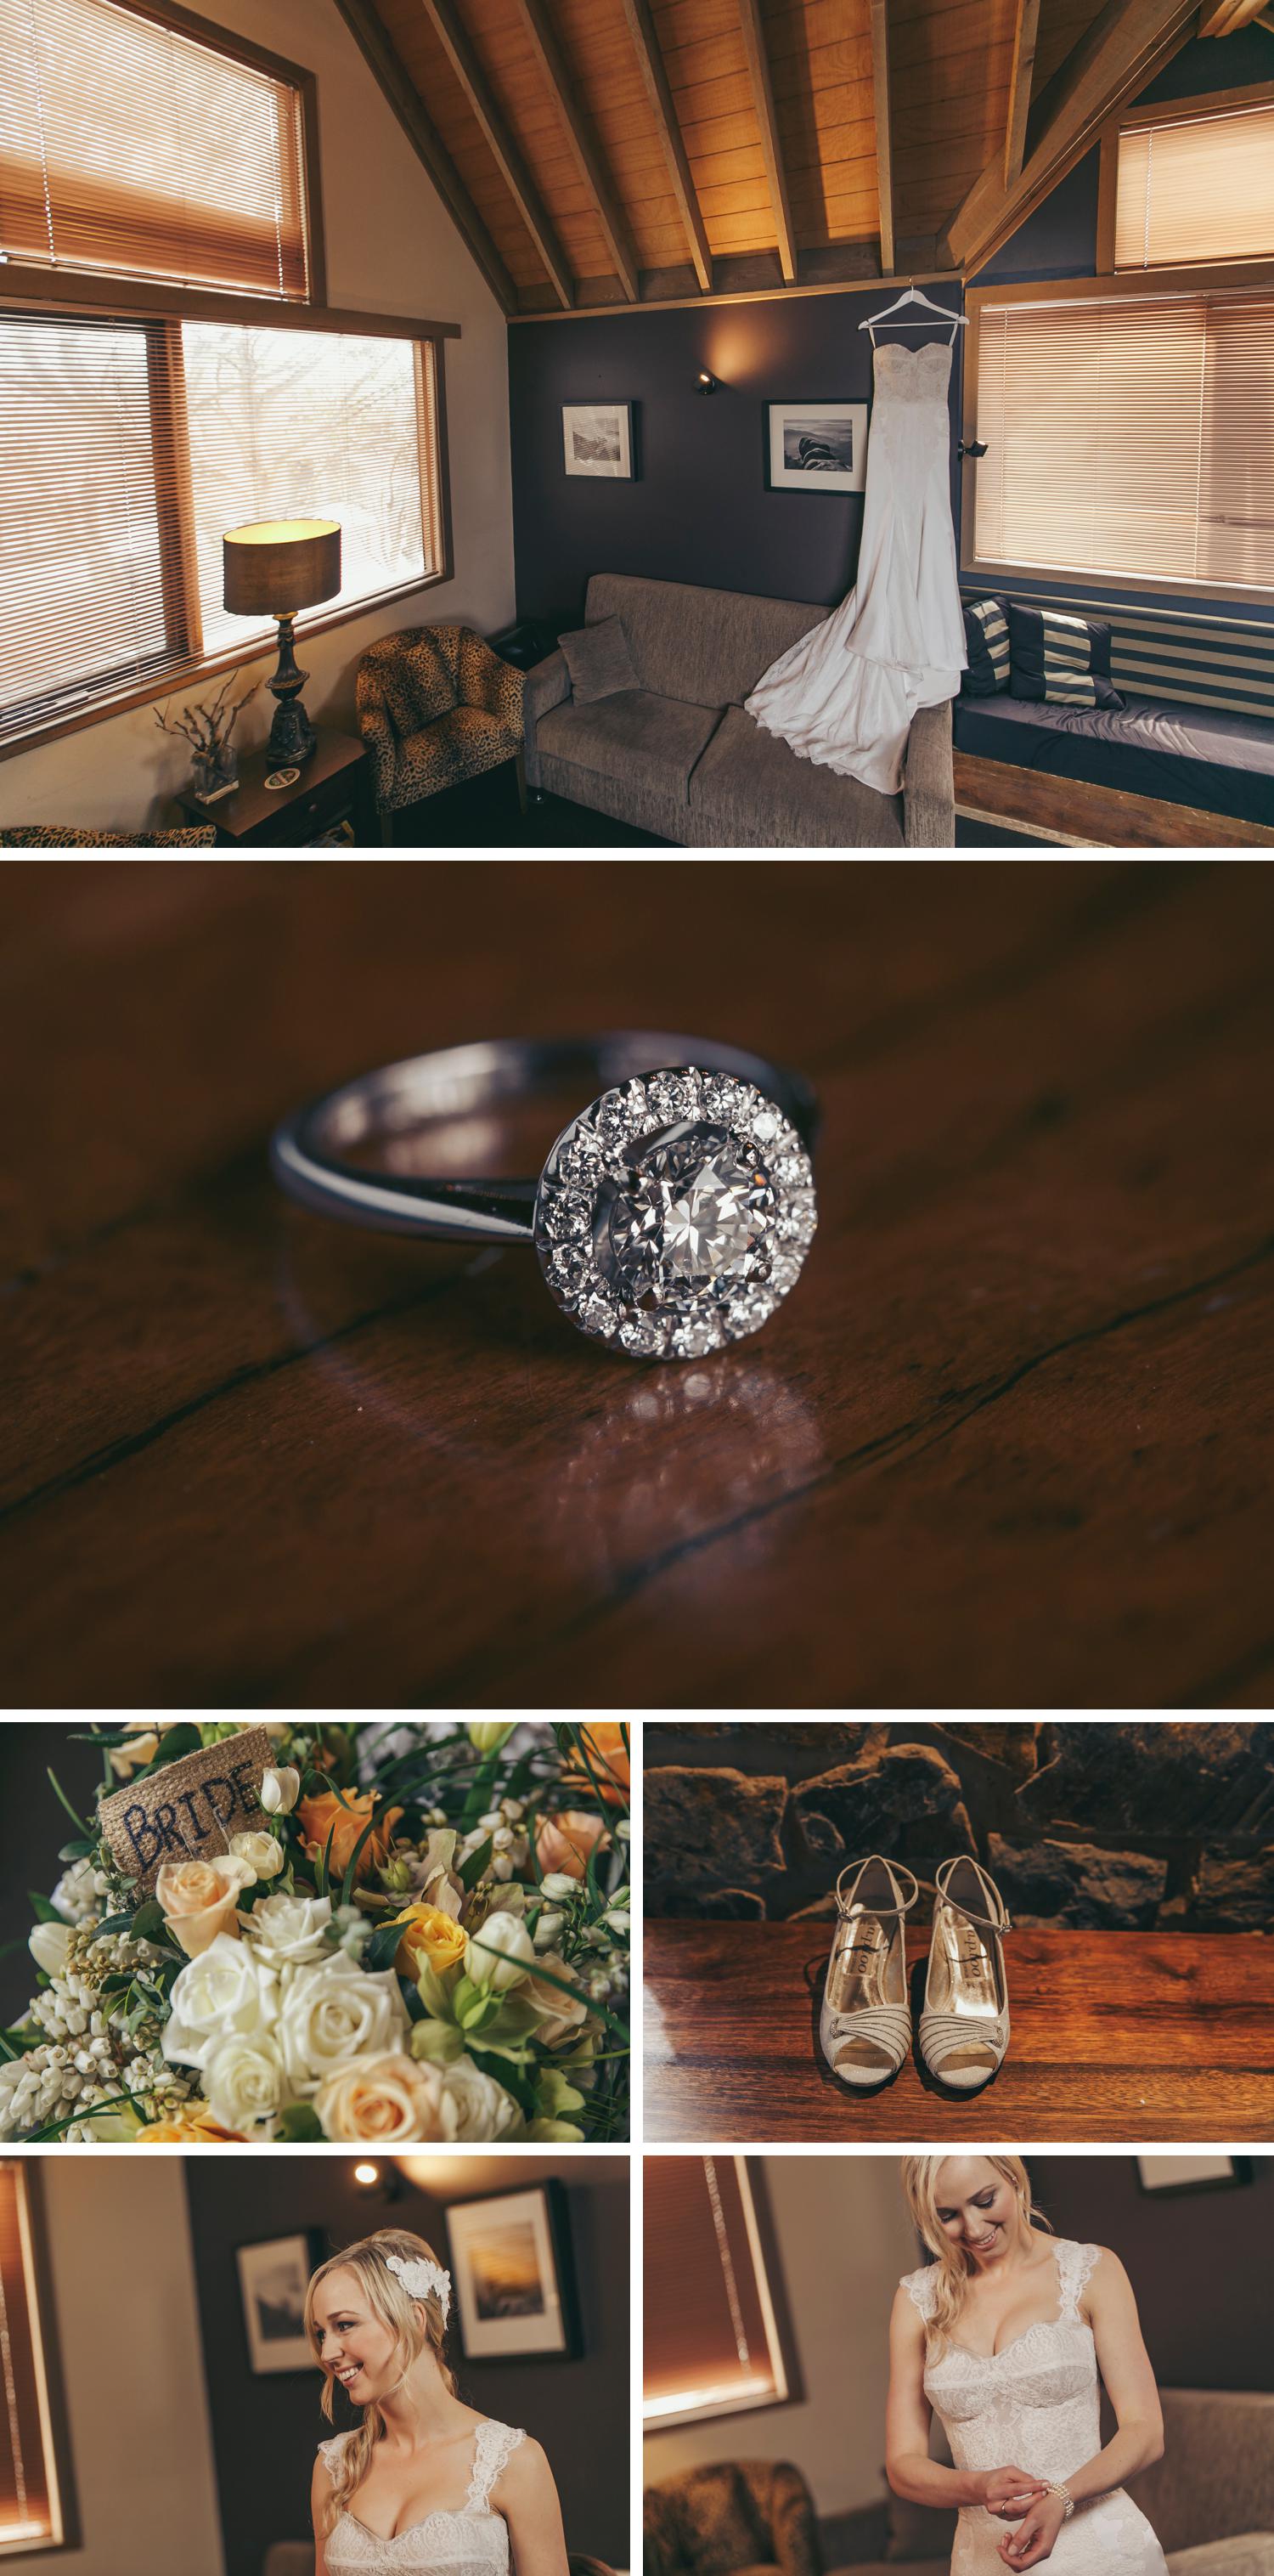 Rundells Alpine Lodge Wedding, Snow Wedding Photos, Beautiful Wedding Photos by Danae Studios, Bride Getting Ready